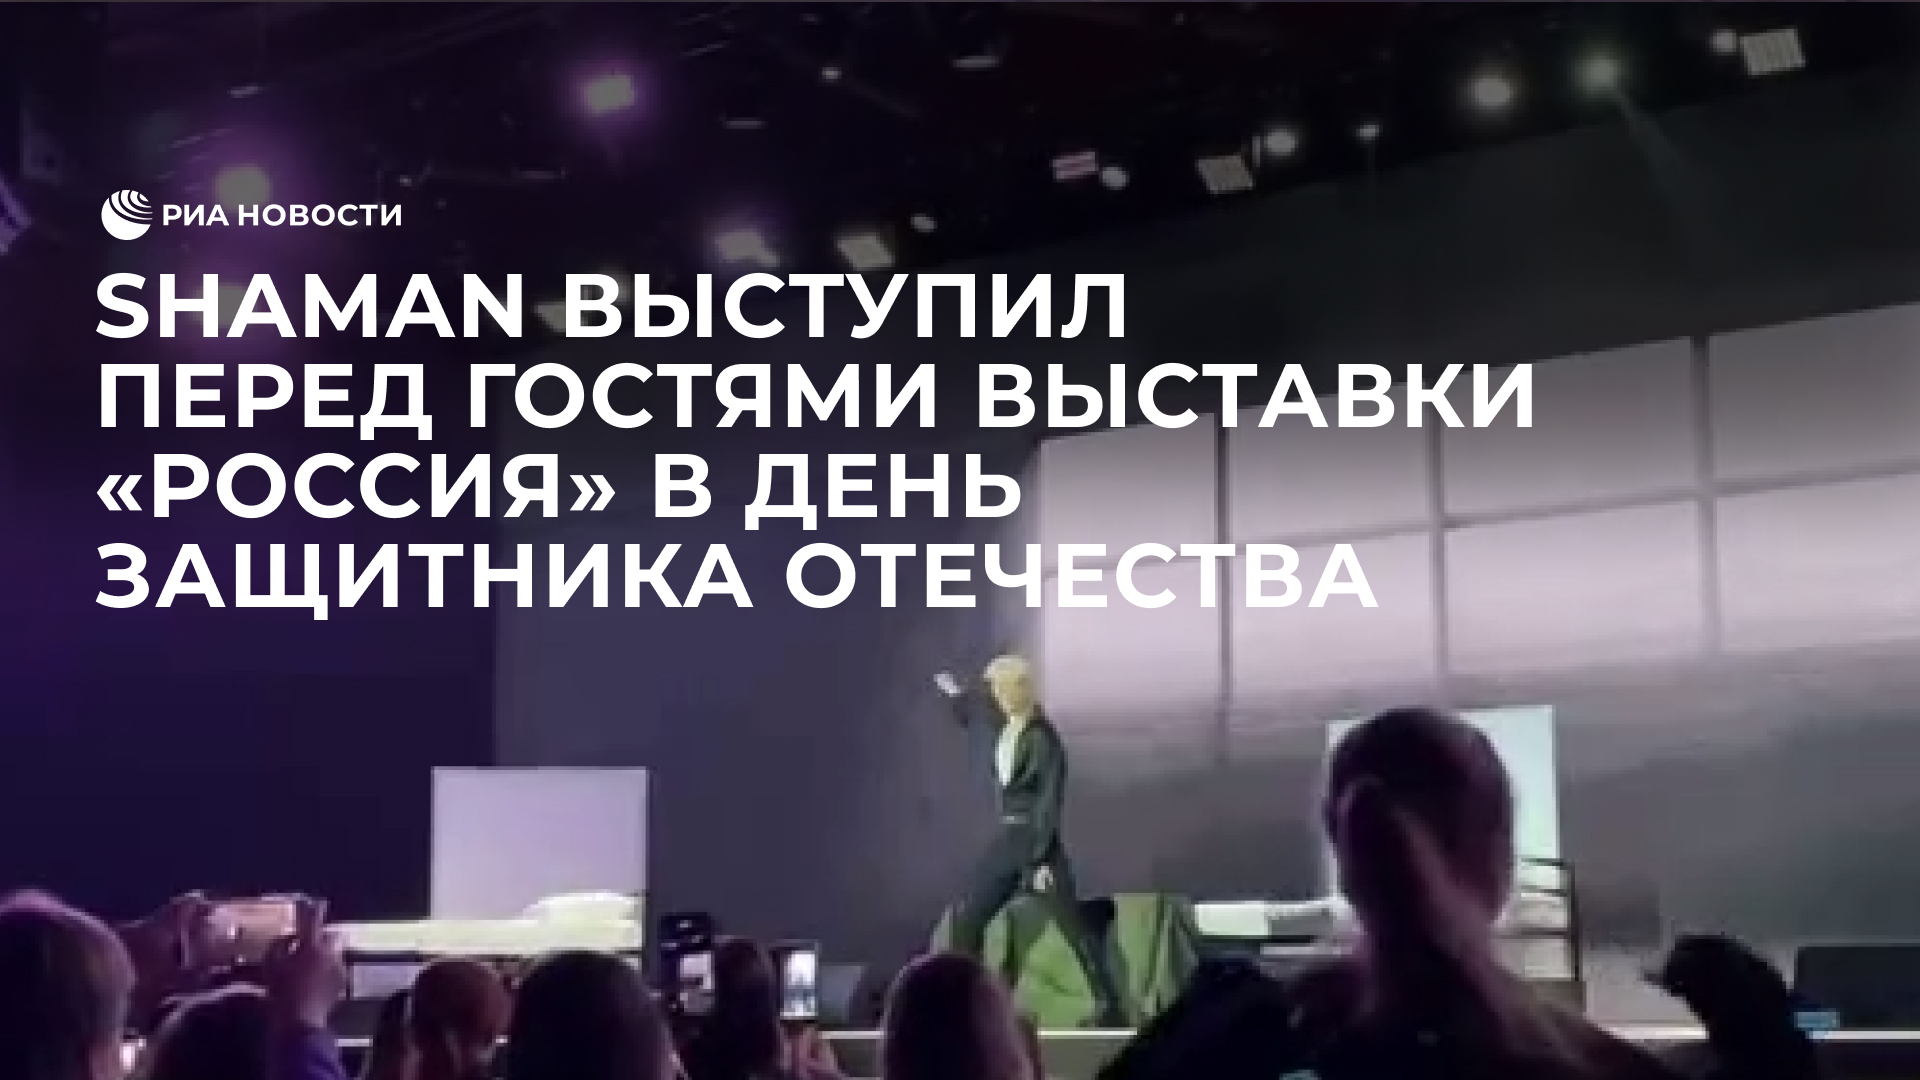 Shaman выступил перед гостями выставки "Россия" в День защитника Отечества